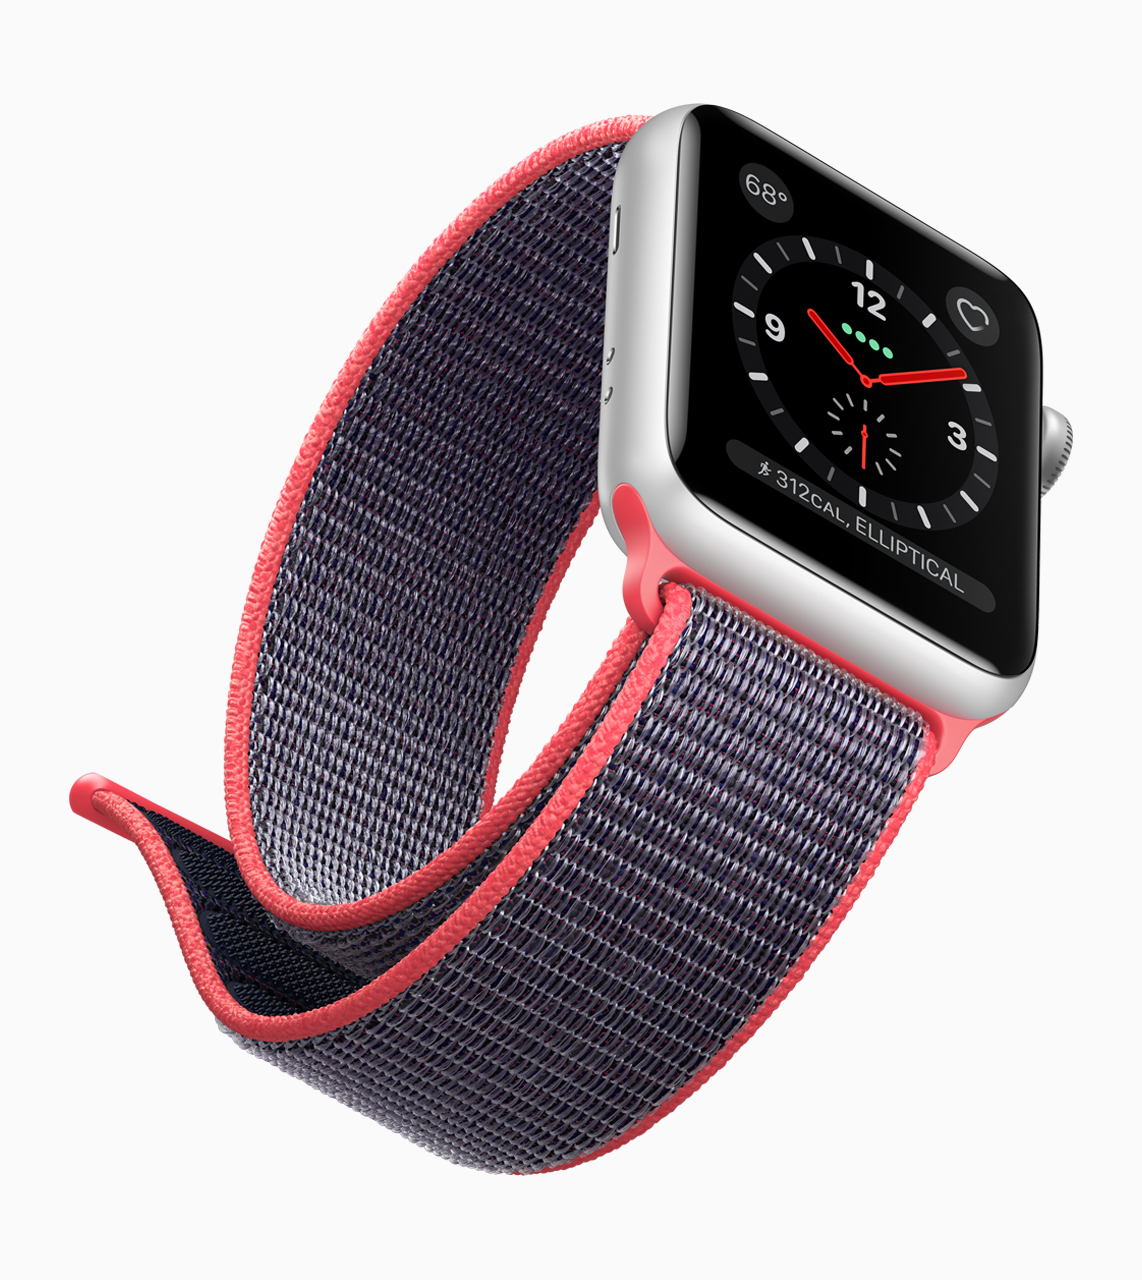 Immagine pubblicata in relazione al seguente contenuto: Apple introduce i Watch Serie 3 con CPU dual-core, connettivit LTE e watchOS 4 | Nome immagine: news27030_Apple-Watch-Serie-3_2.jpg